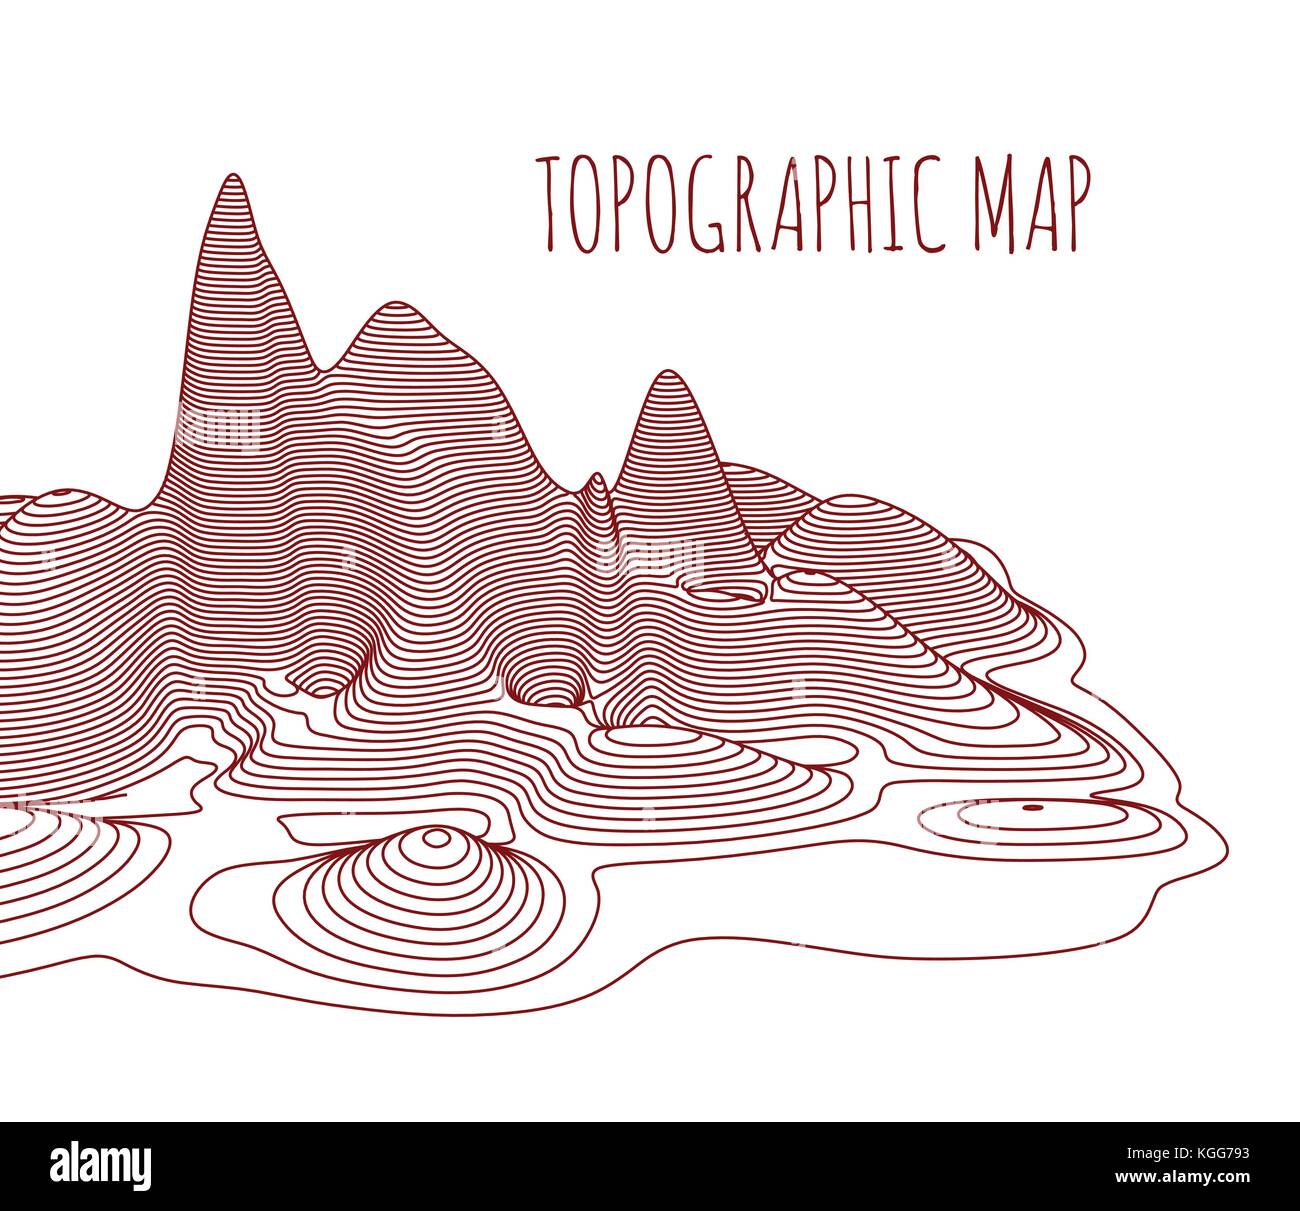 Mapa topográfico de la localidad, ilustración vectorial Ilustración del Vector